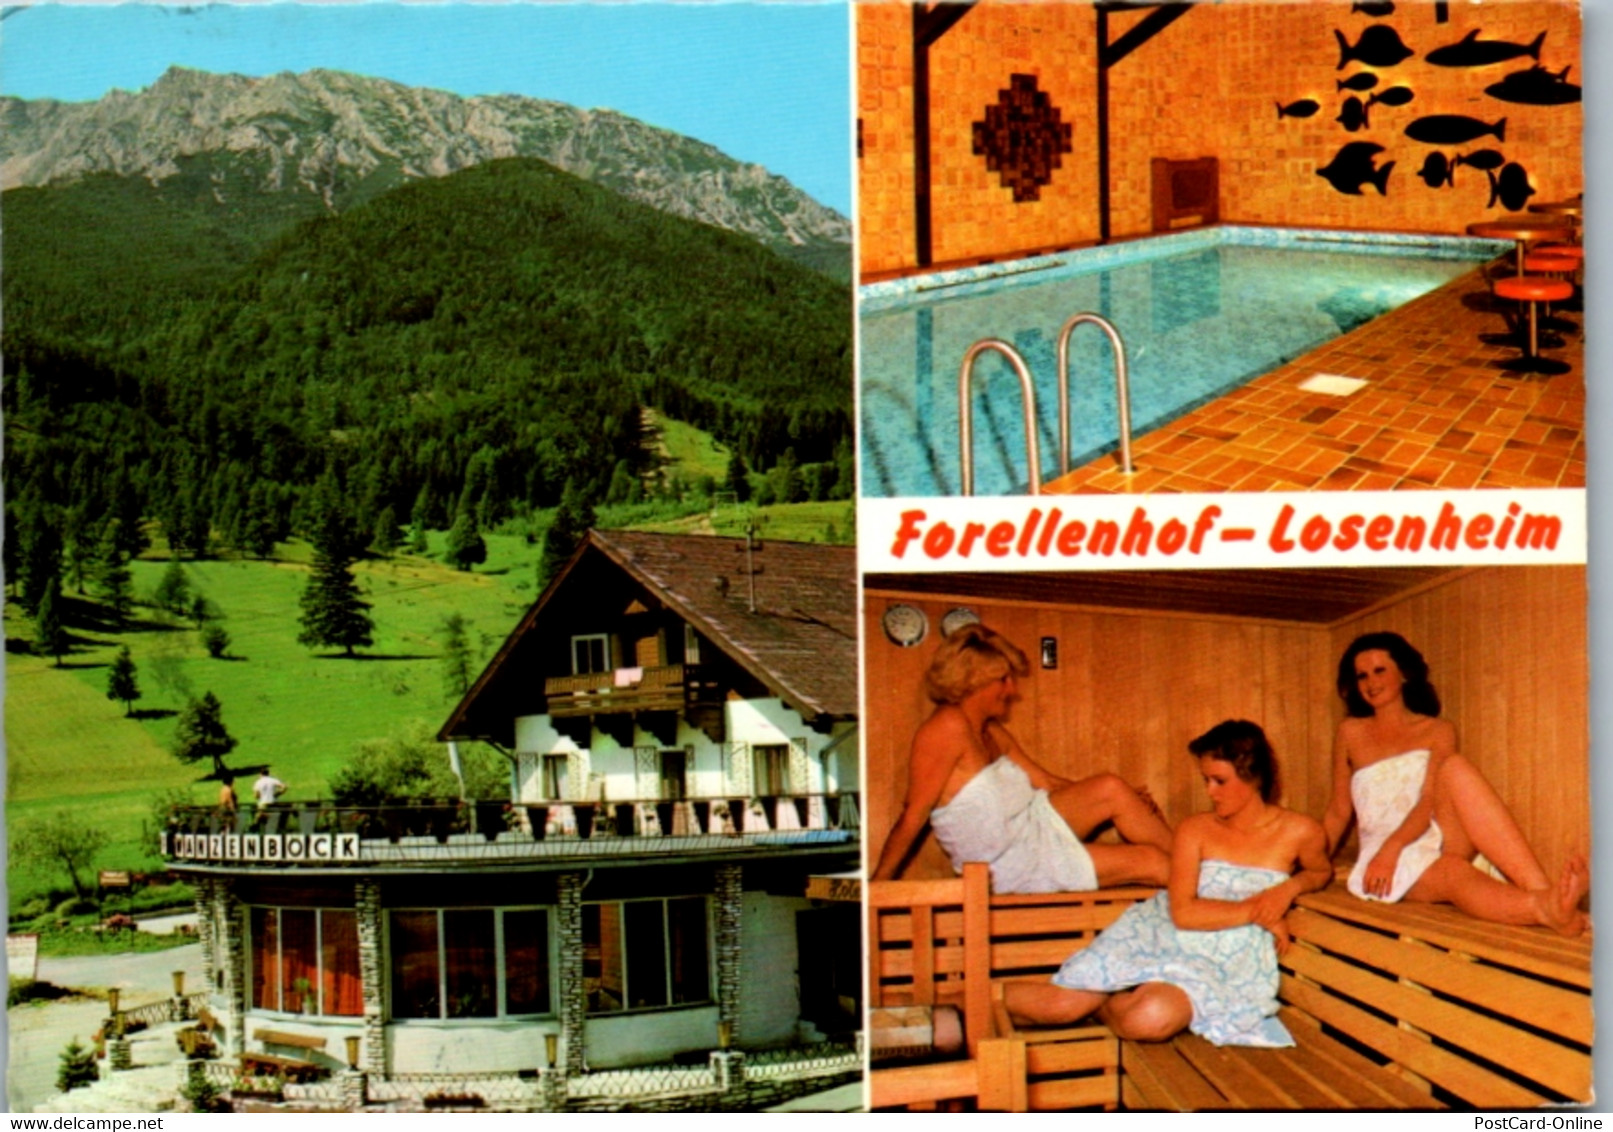 5793 - Niederösterreich - Puchberg Am Schneeberg , Forellenhof Losenheim , Familie Wanzenböck - Gelaufen 1978 - Schneeberggebiet